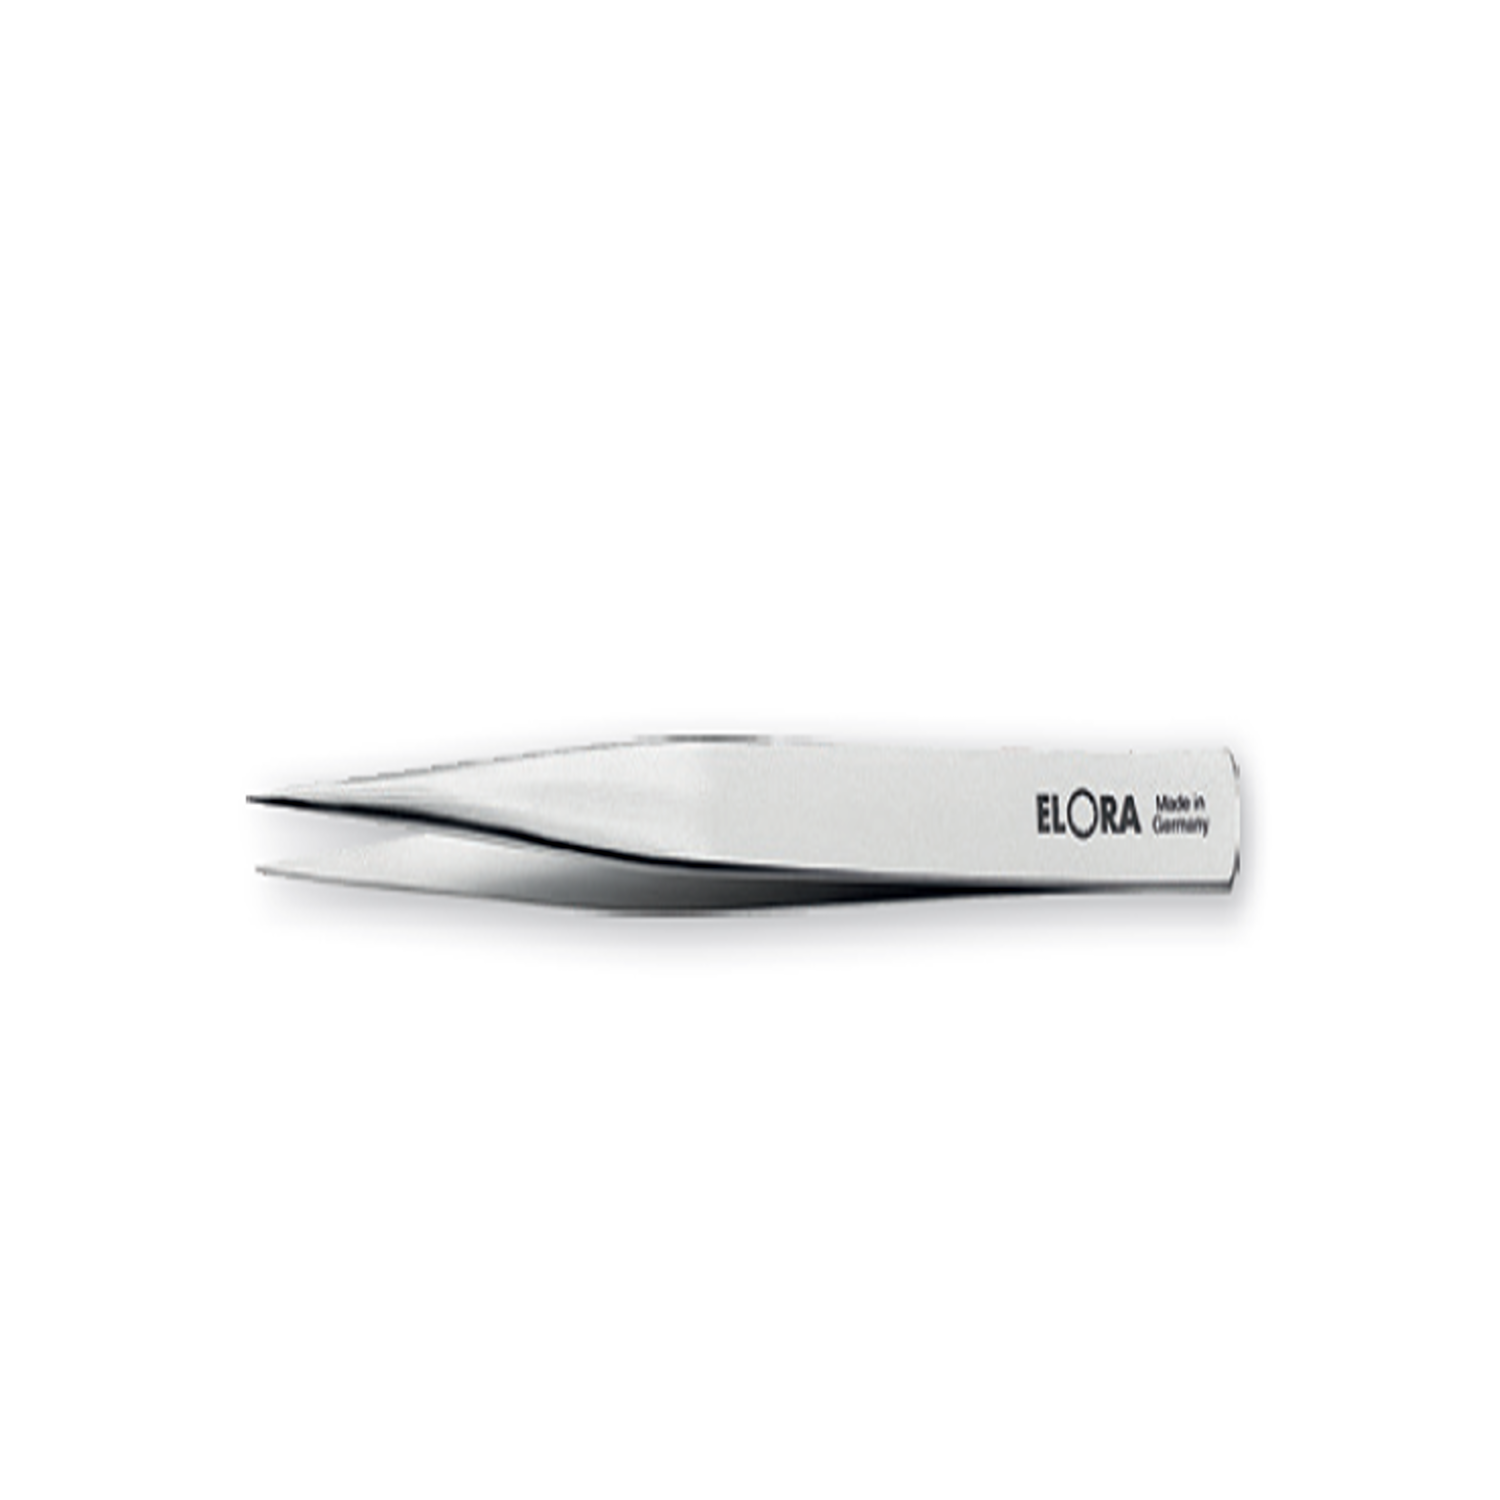 ELORA 5350-ST Electronic Tweezers (ELORA Tools) - Premium Tweezers from ELORA - Shop now at Yew Aik.